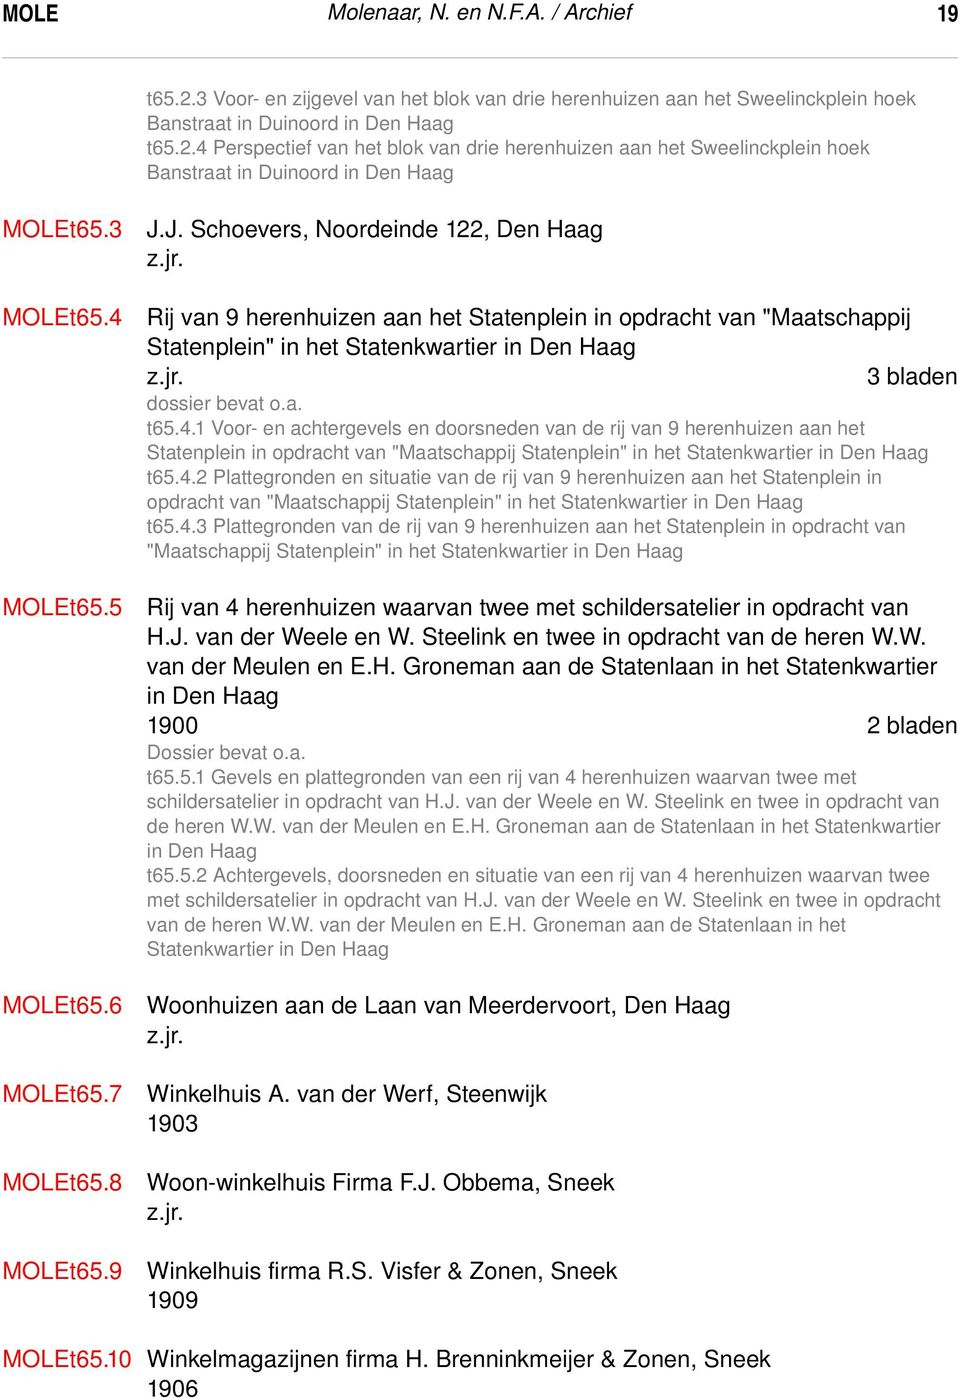 J. Schoevers, Noordeinde 122, Den Haag Rij van 9 herenhuizen aan het Statenplein in opdracht van "Maatschappij Statenplein" in het Statenkwartier in Den Haag 3 bladen dossier bevat o.a. t65.4.